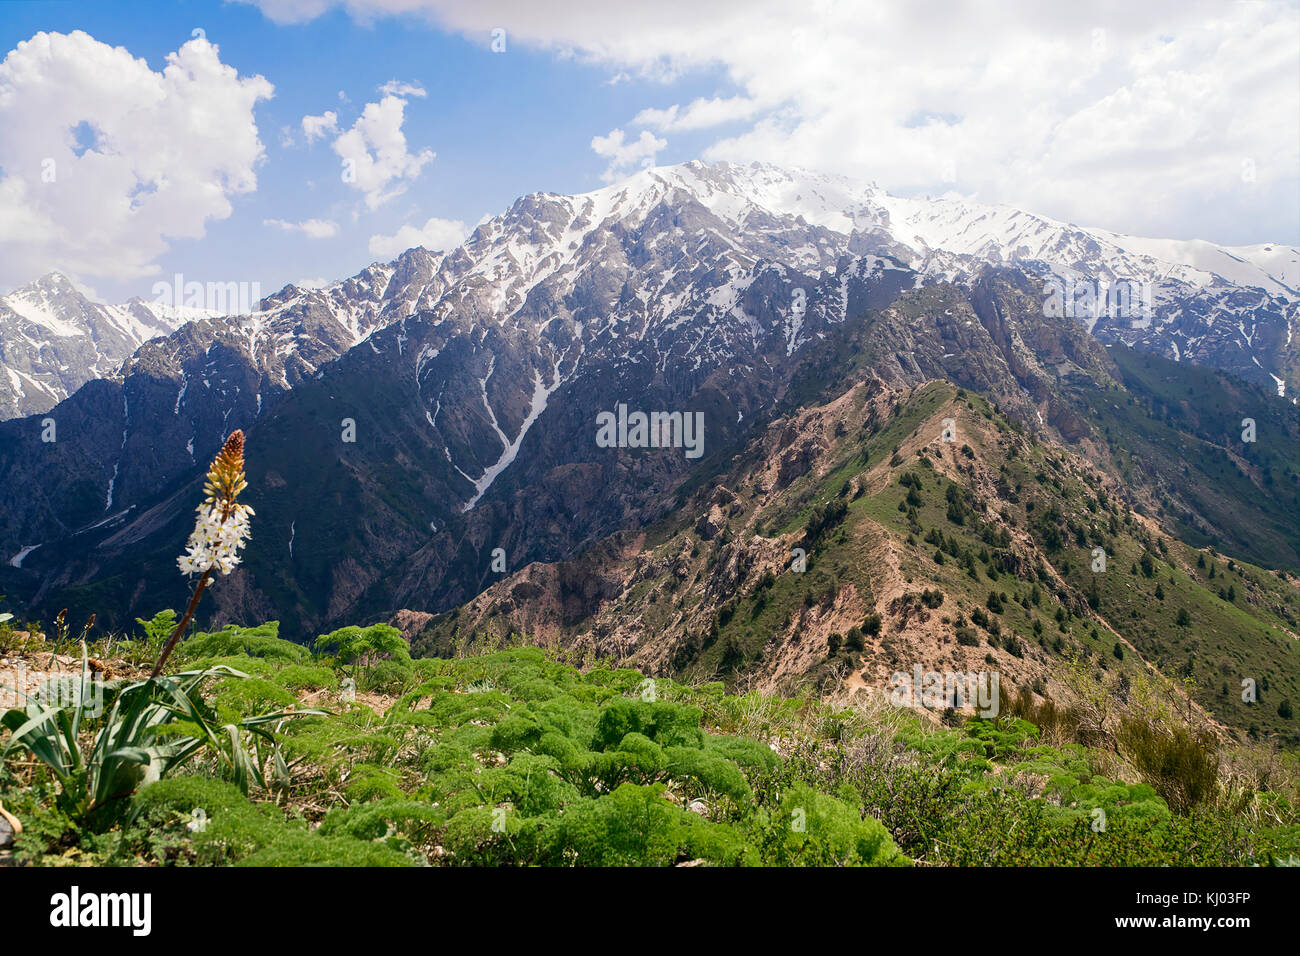 Chimgan mountains, Uzbekistan Stock Photo